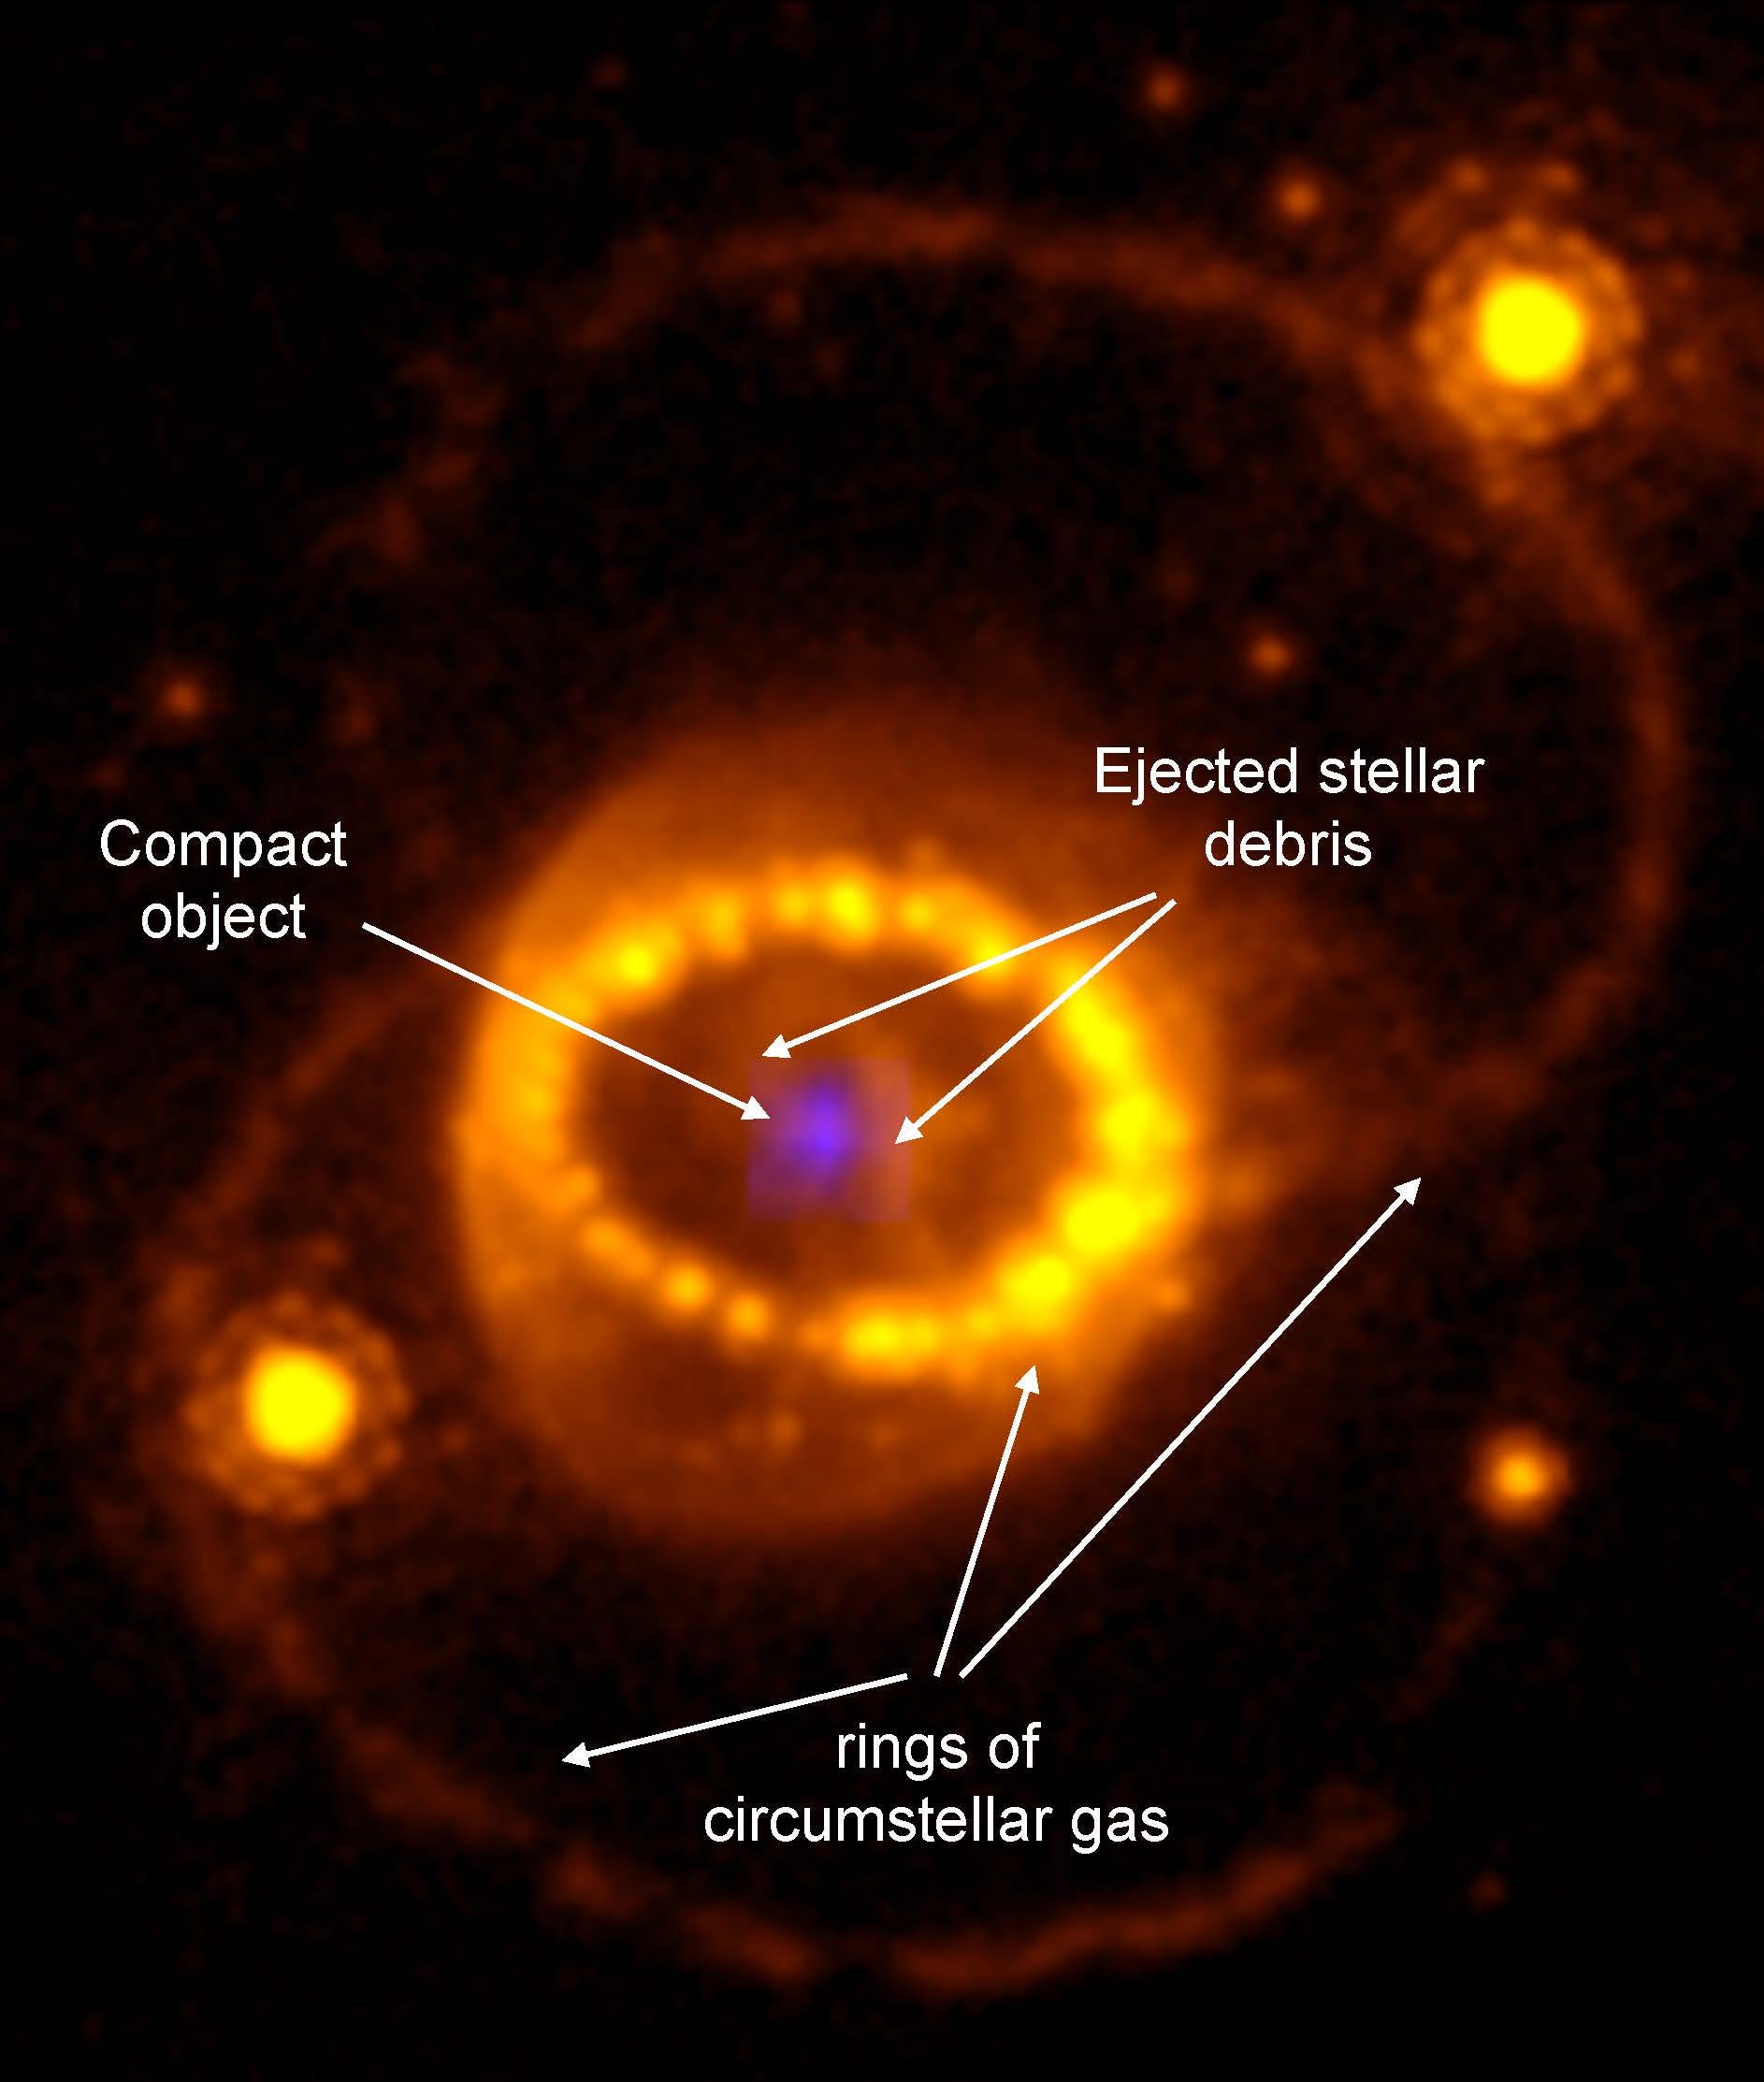 Ein Bild von SN 1987-A mit Beschriftungen, die auf Gasringe, ausgestoßene Sterntrümmer und das kompakte Objekt in seiner Mitte hinweisen.